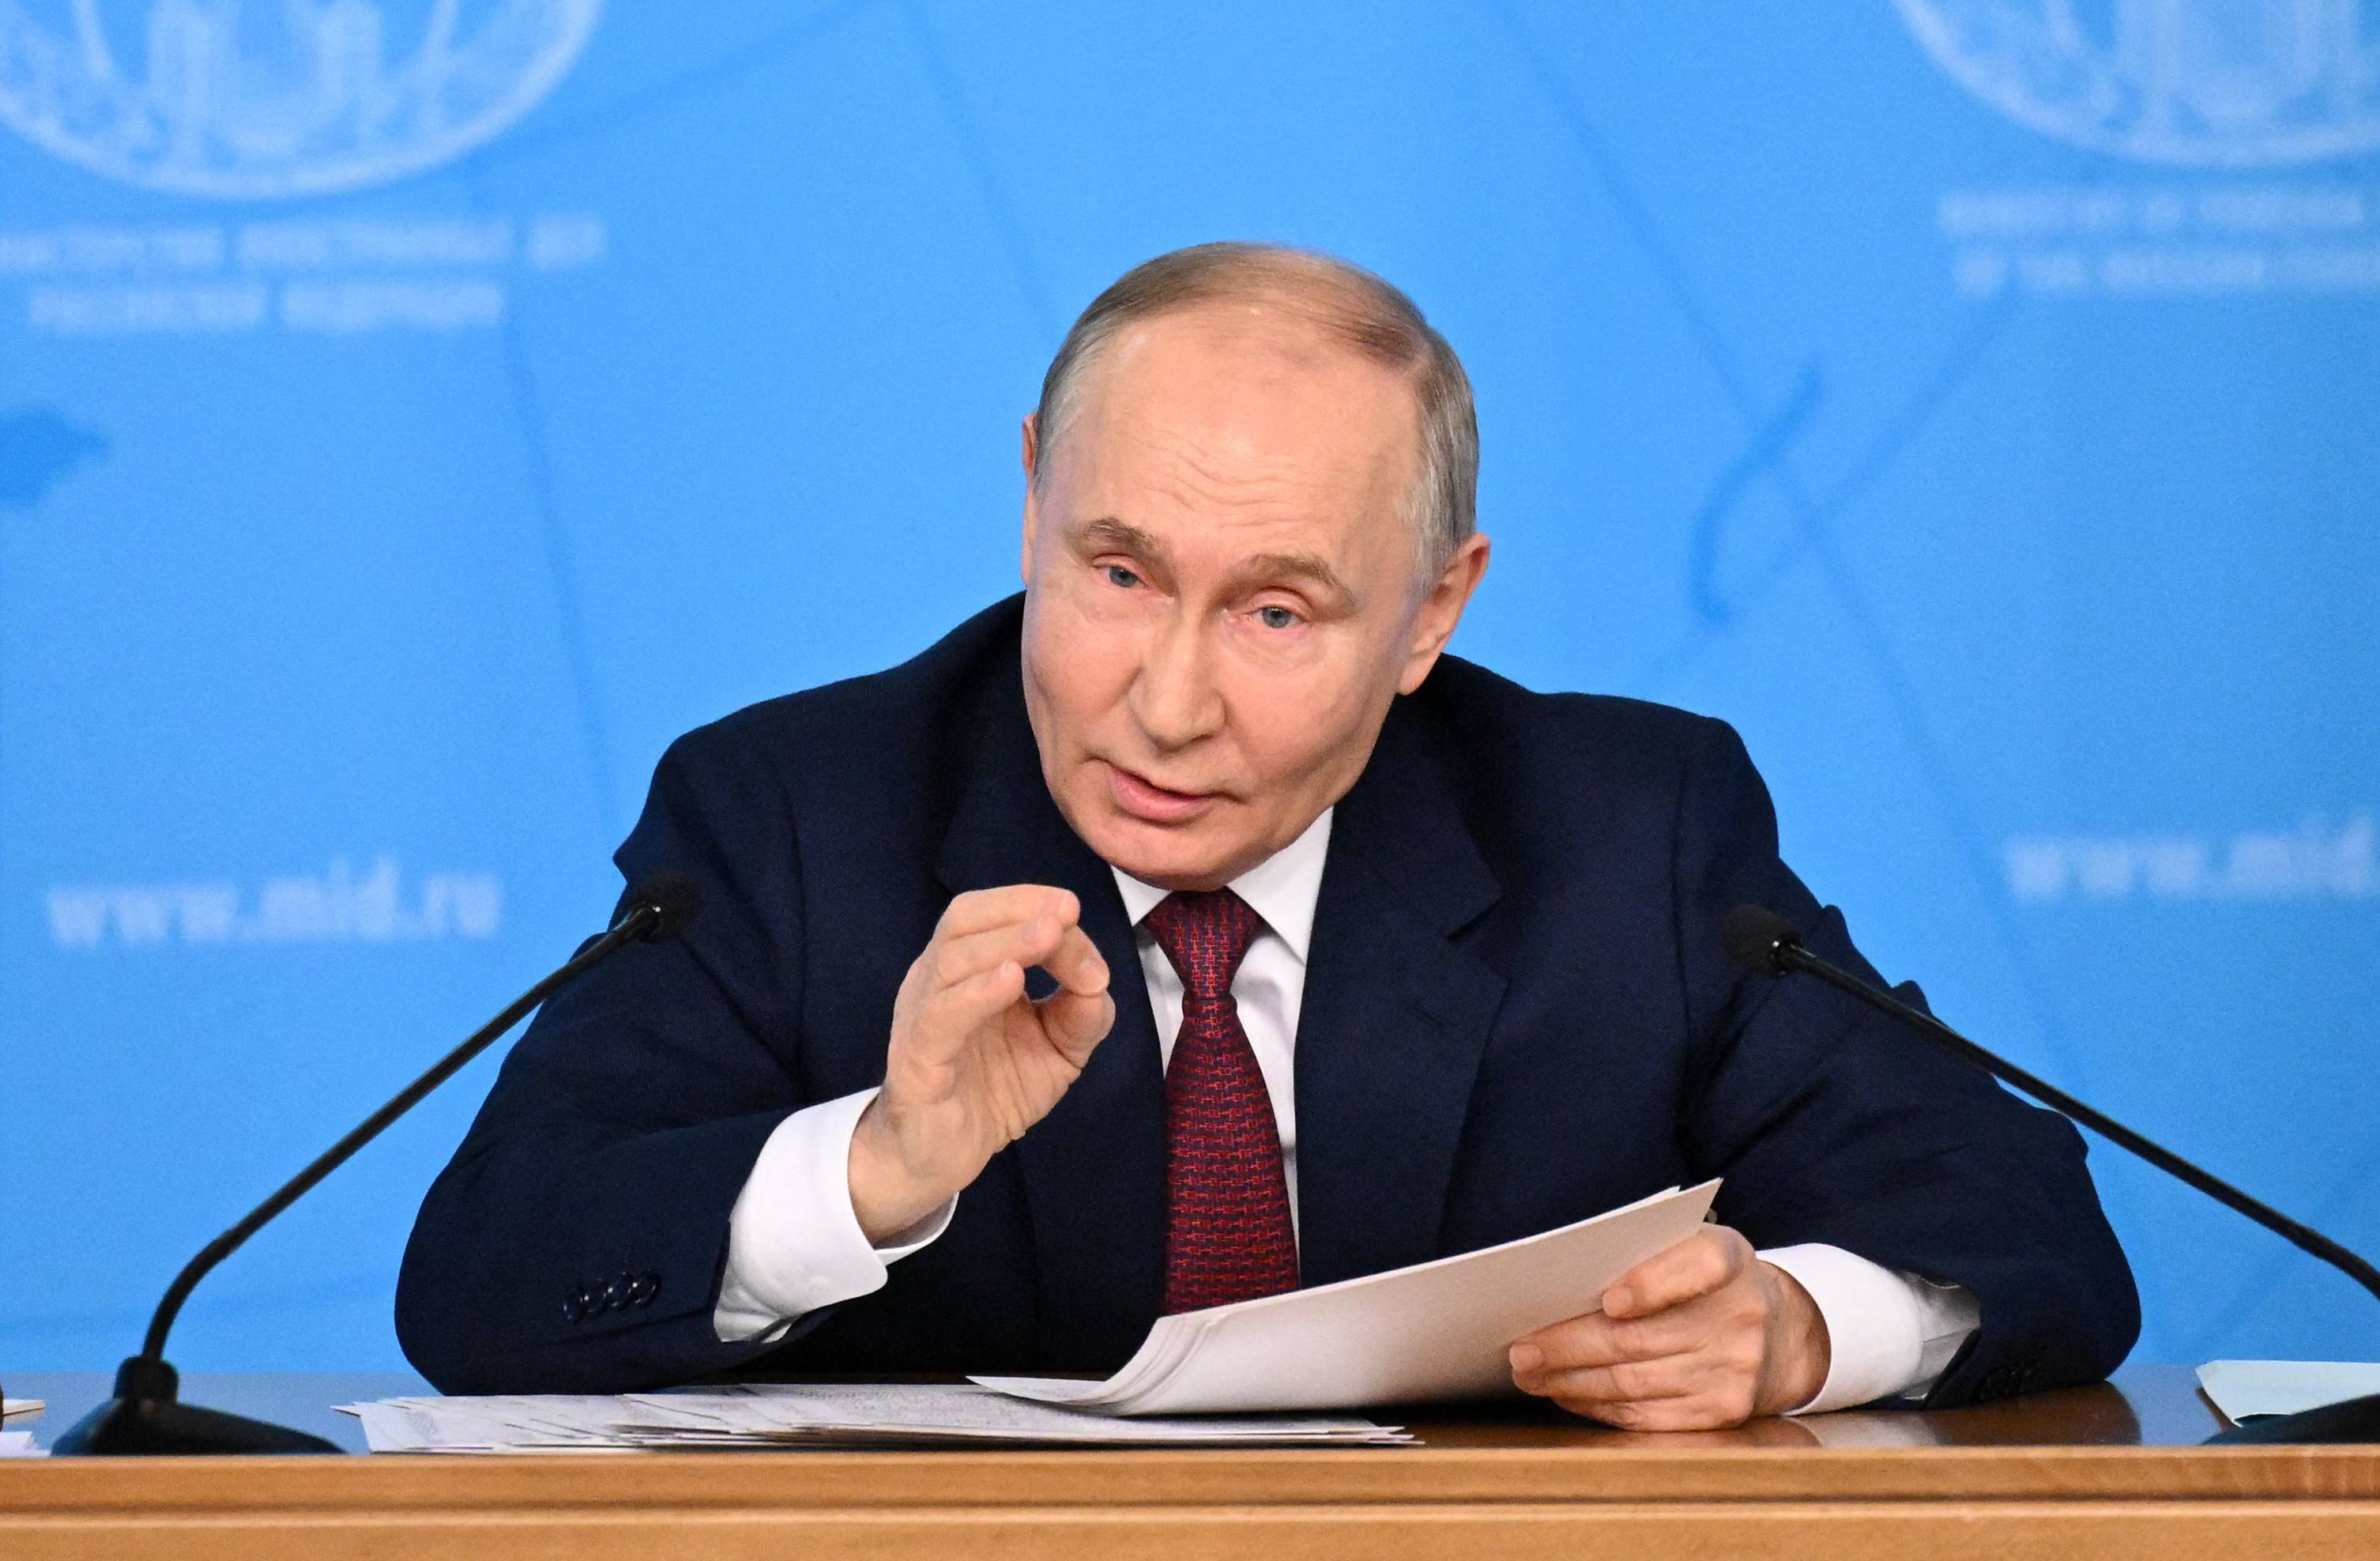 Władimir Putin. Łysiejący, krępy mężczyzna w garniturze i białej koszuli, siedzi przy stole, gestykuluje jedną dłonią.